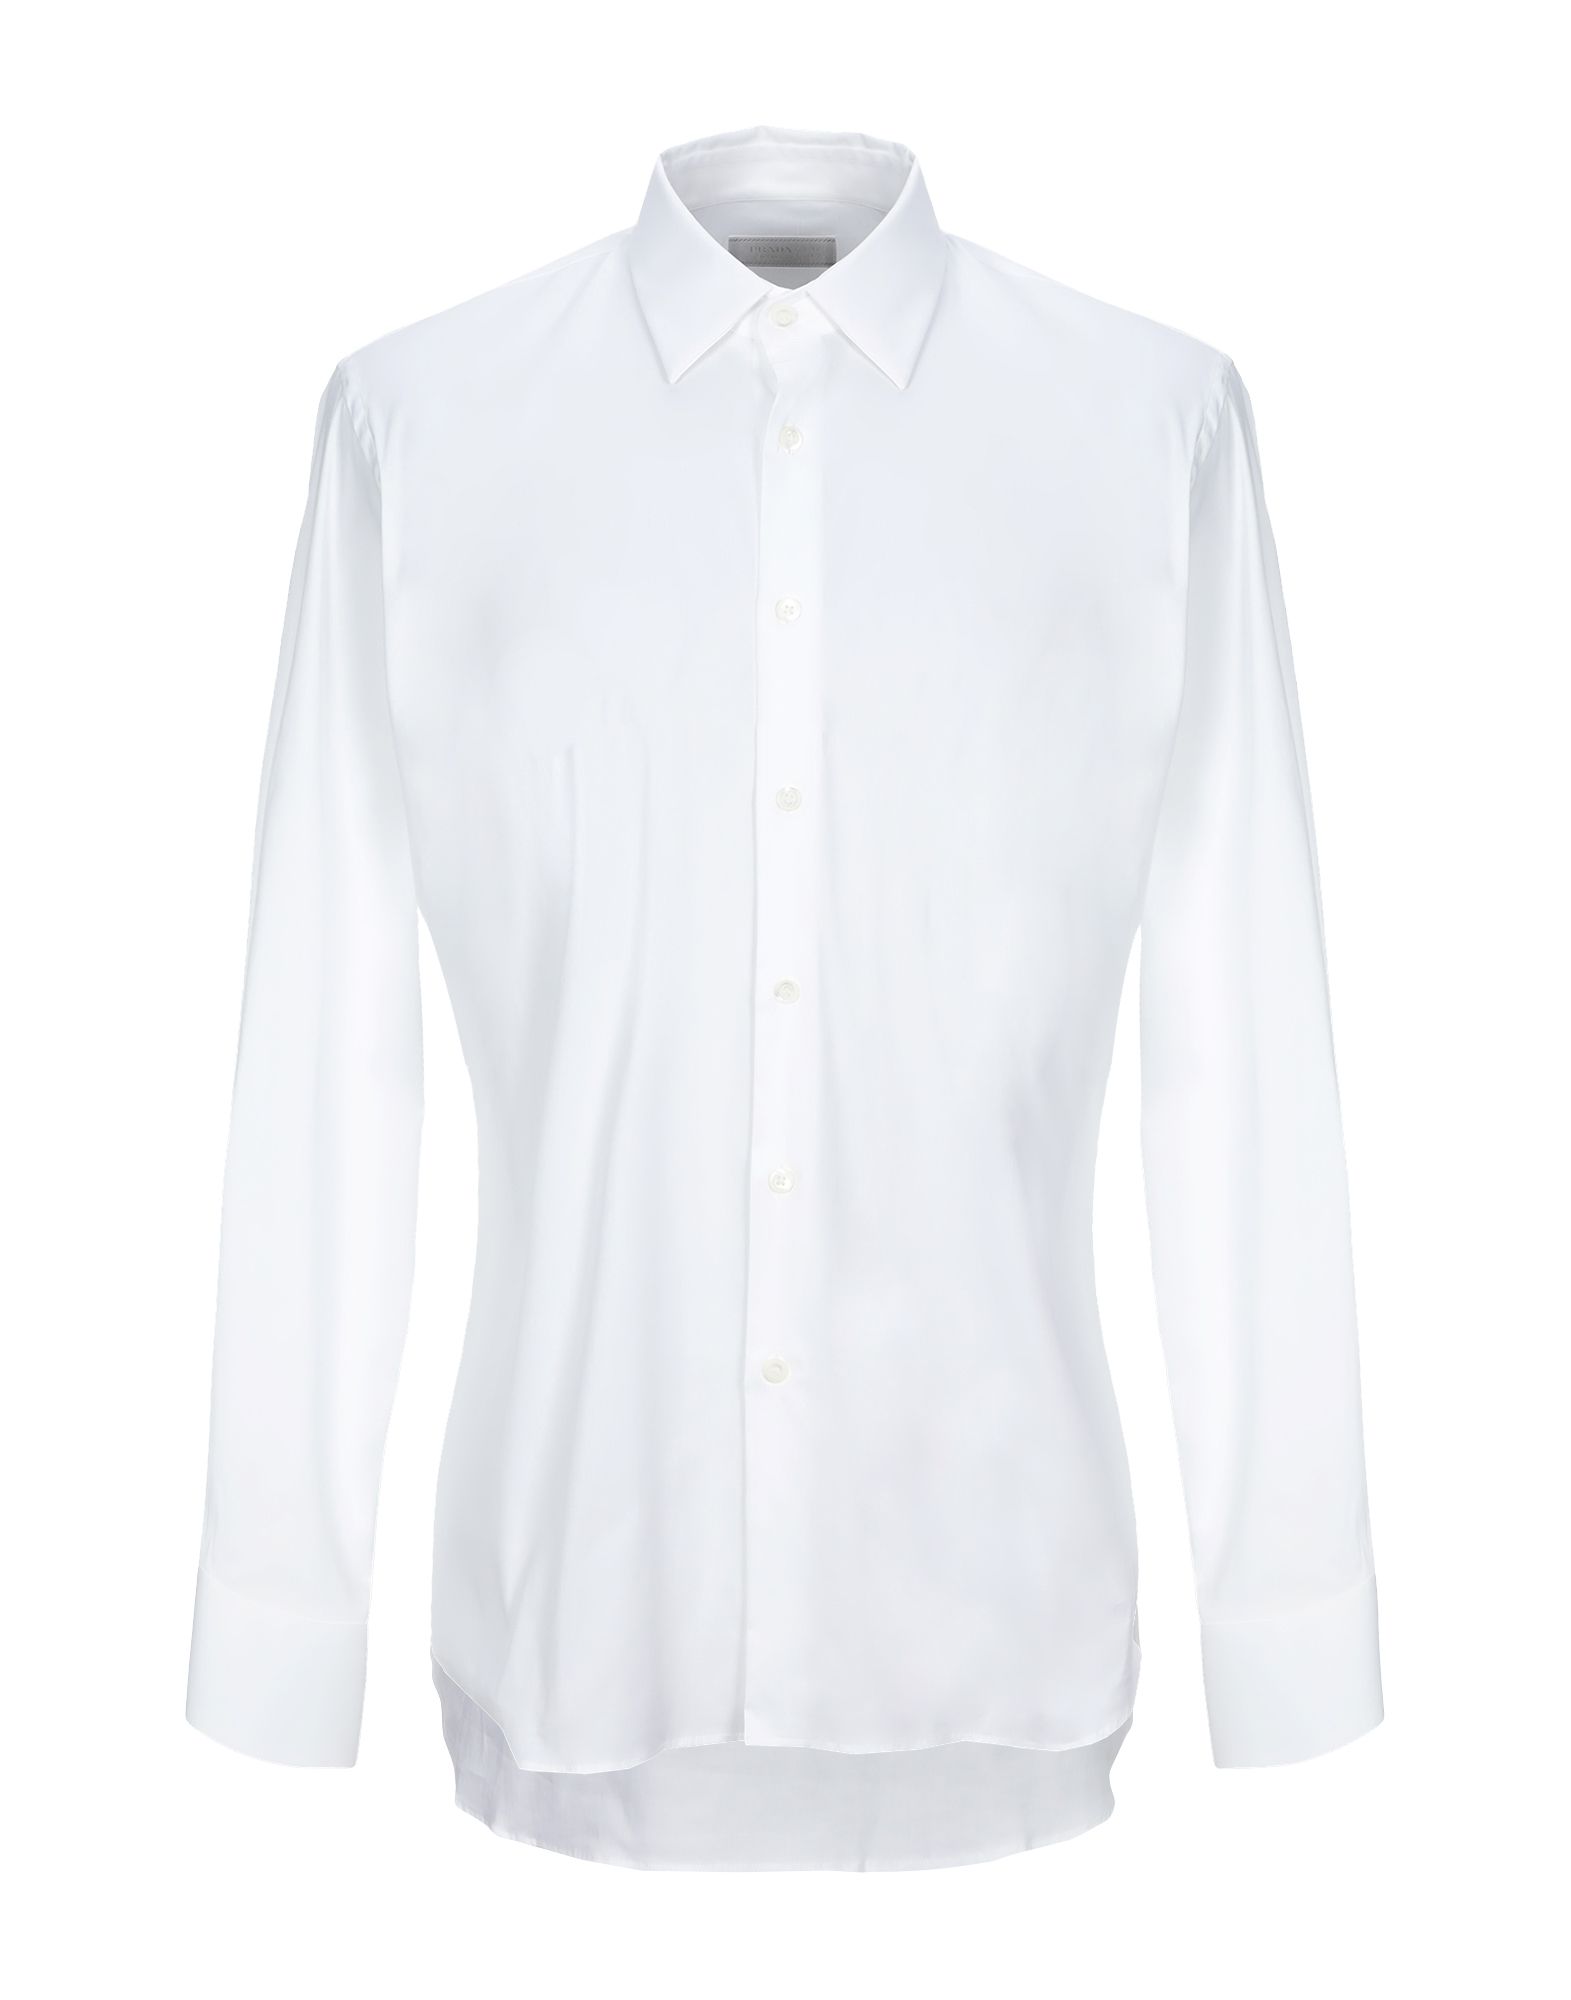 プラダ(PRADA) メンズシャツ・ワイシャツ | 通販・人気ランキング - 価格.com